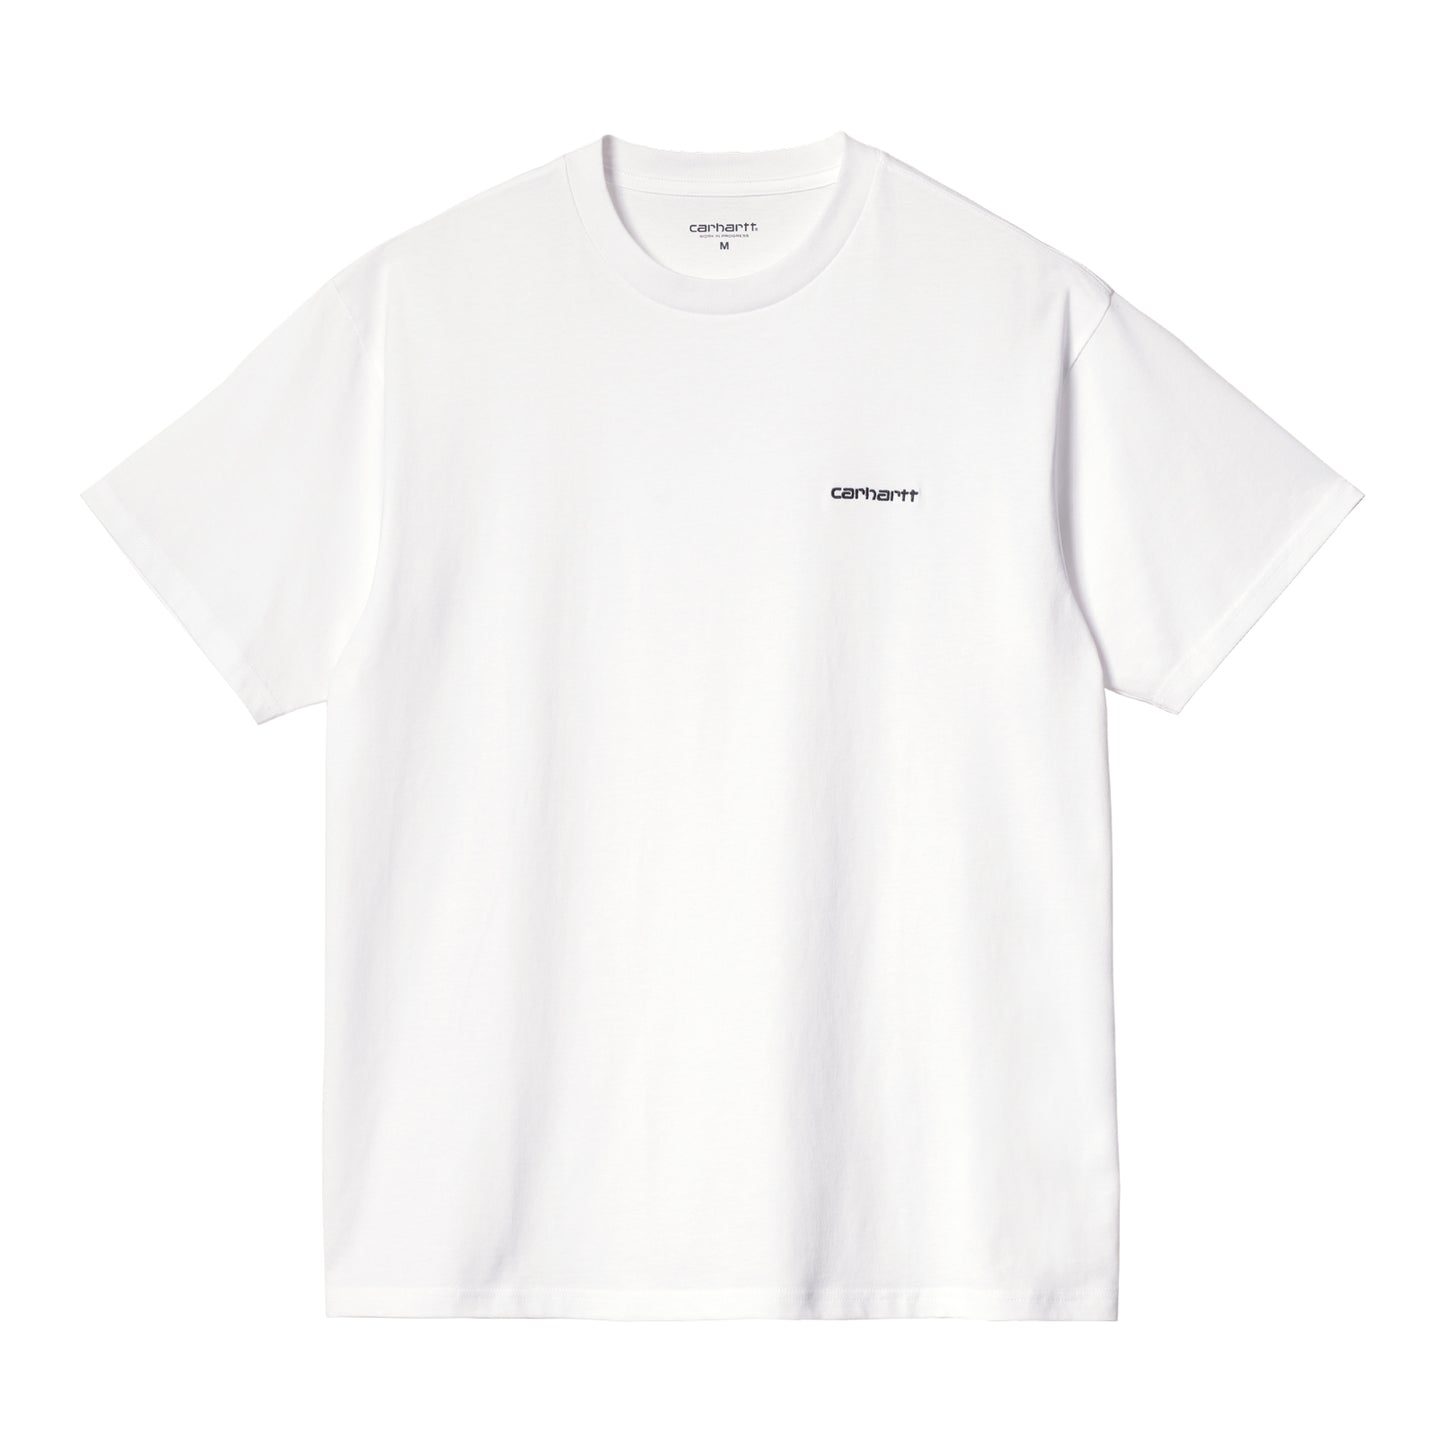 Carhartt WIP Script Embroidery T-Shirt White/Black. Foto da parte da frente.